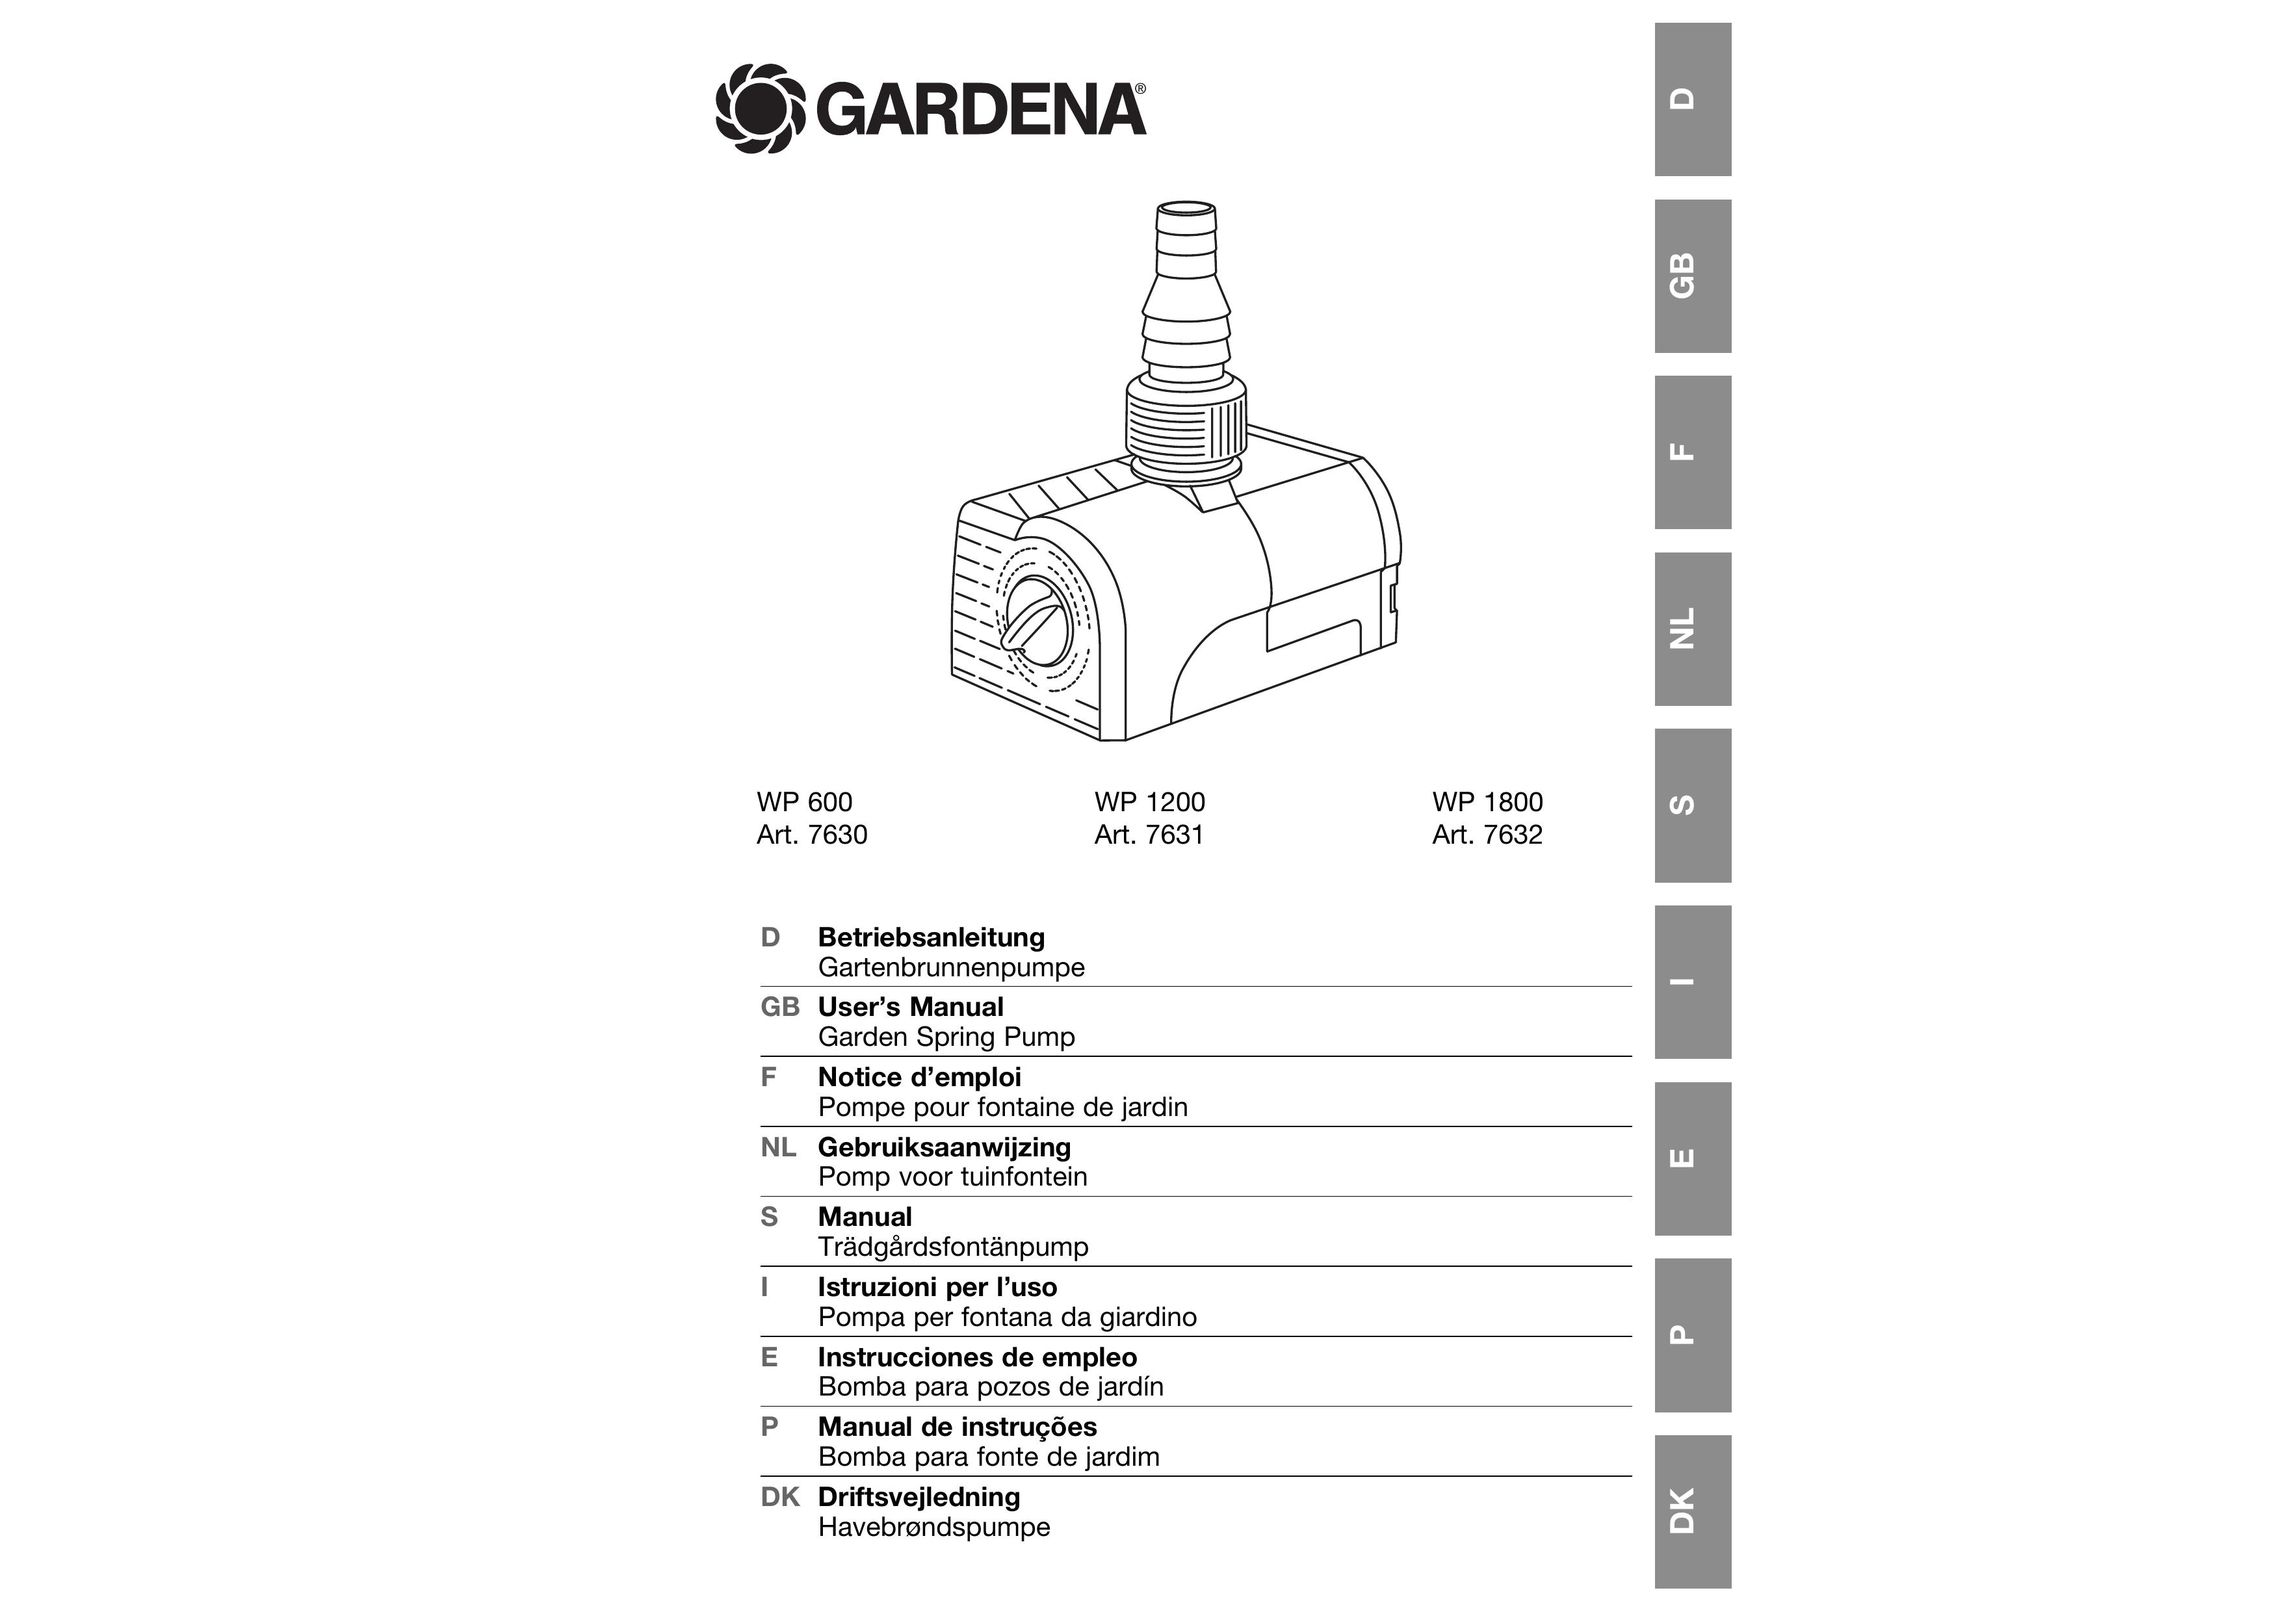 Gardena WP 1800 Water Pump User Manual